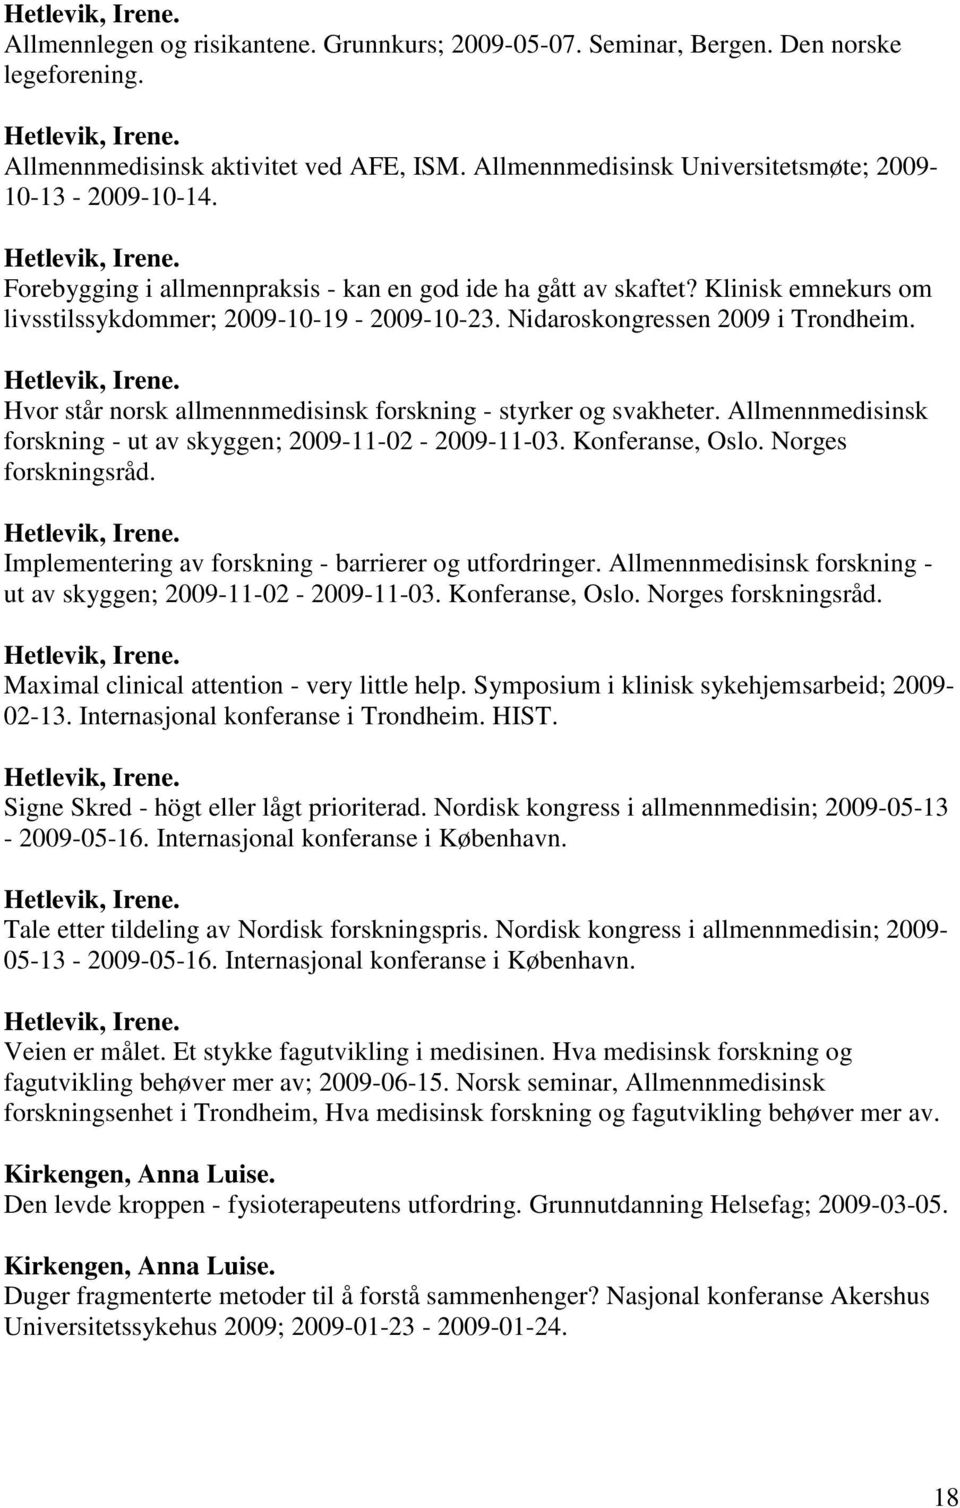 Klinisk emnekurs om livsstilssykdommer; 2009-10-19-2009-10-23. Nidaroskongressen 2009 i Trondheim. Hetlevik, Irene. Hvor står norsk allmennmedisinsk forskning - styrker og svakheter.